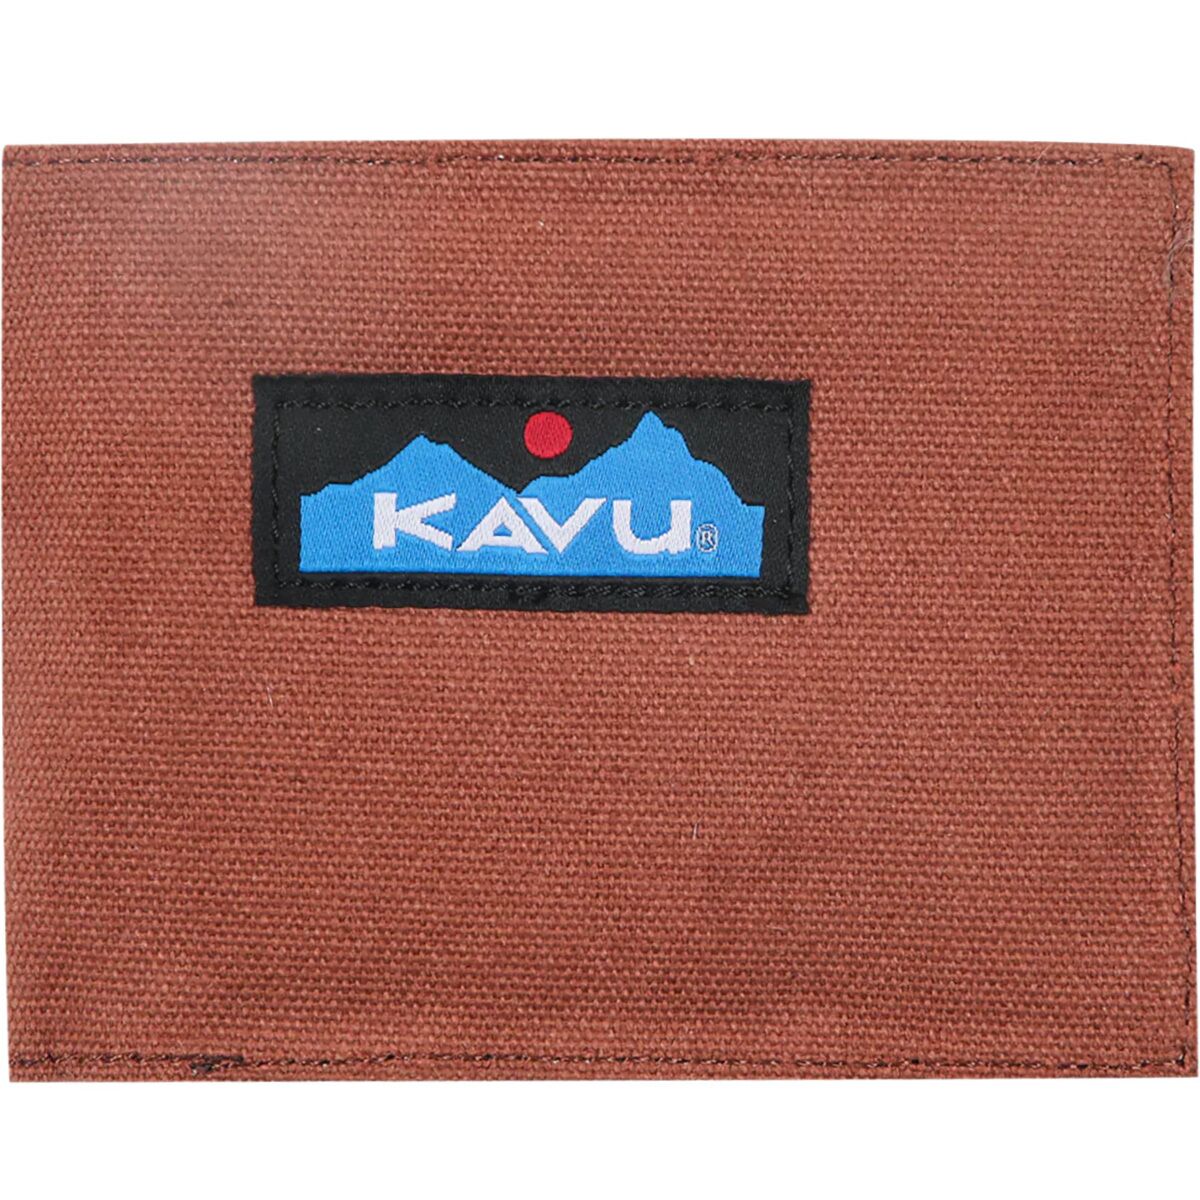 KAVU Yukon Wallet - Men's